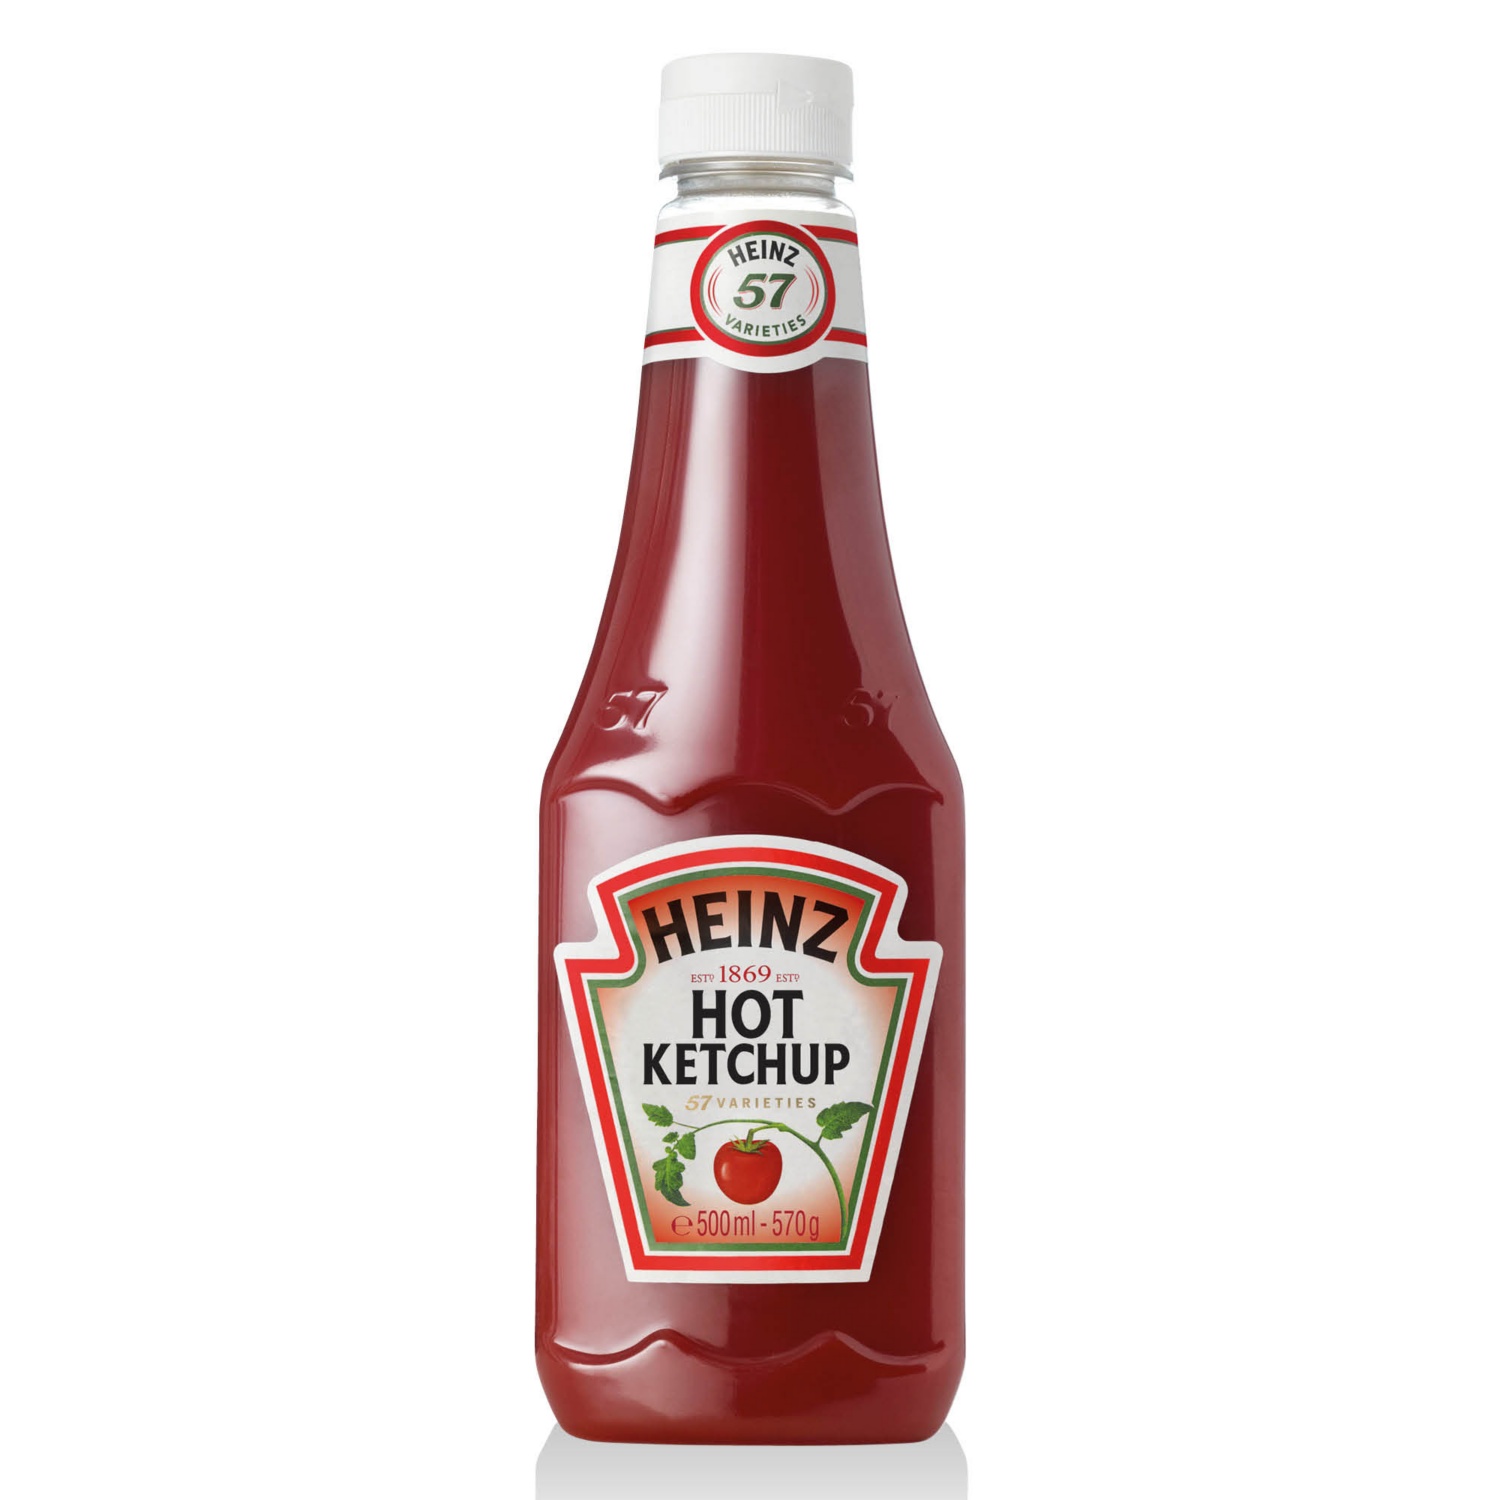 HEINZ Ketchup, 570 g, hot